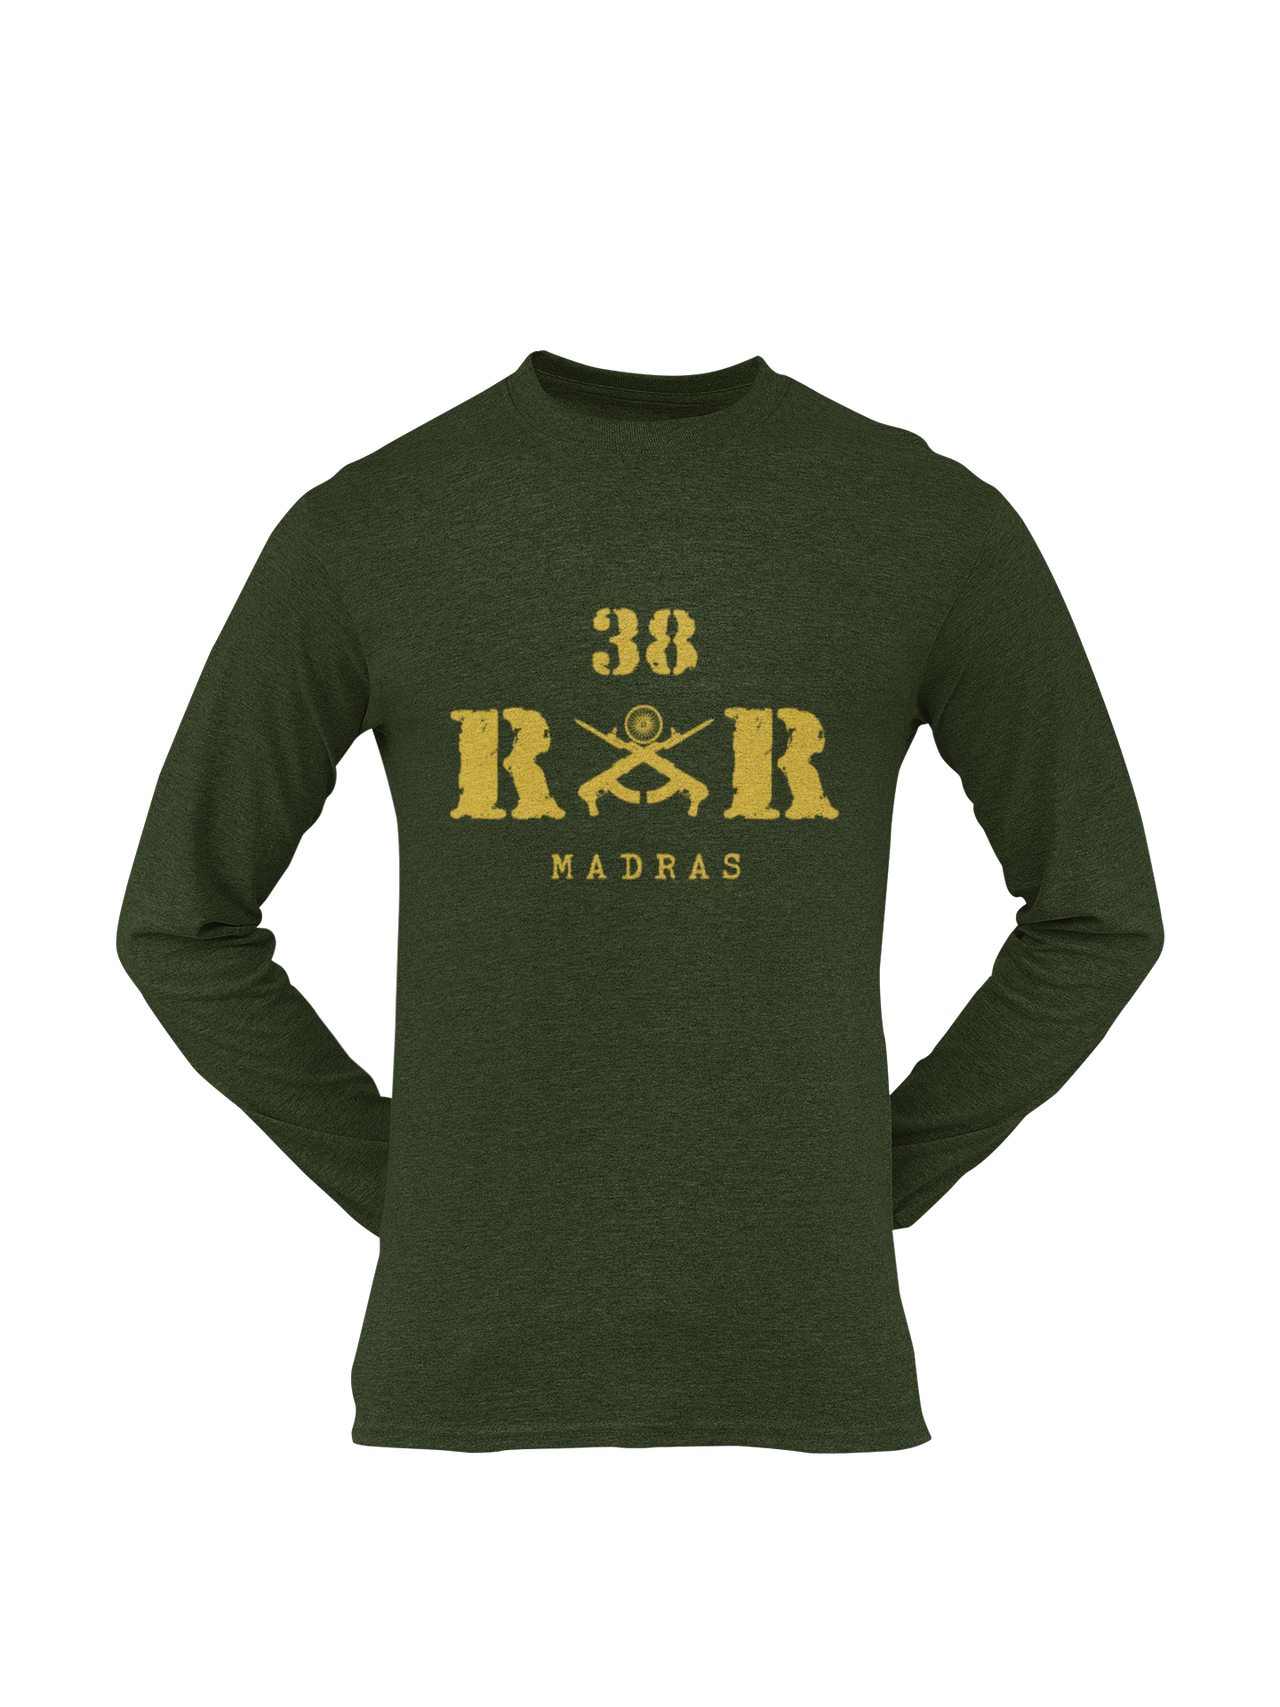 Rashtriya Rifles T-shirt - 38 RR Madras (Men)